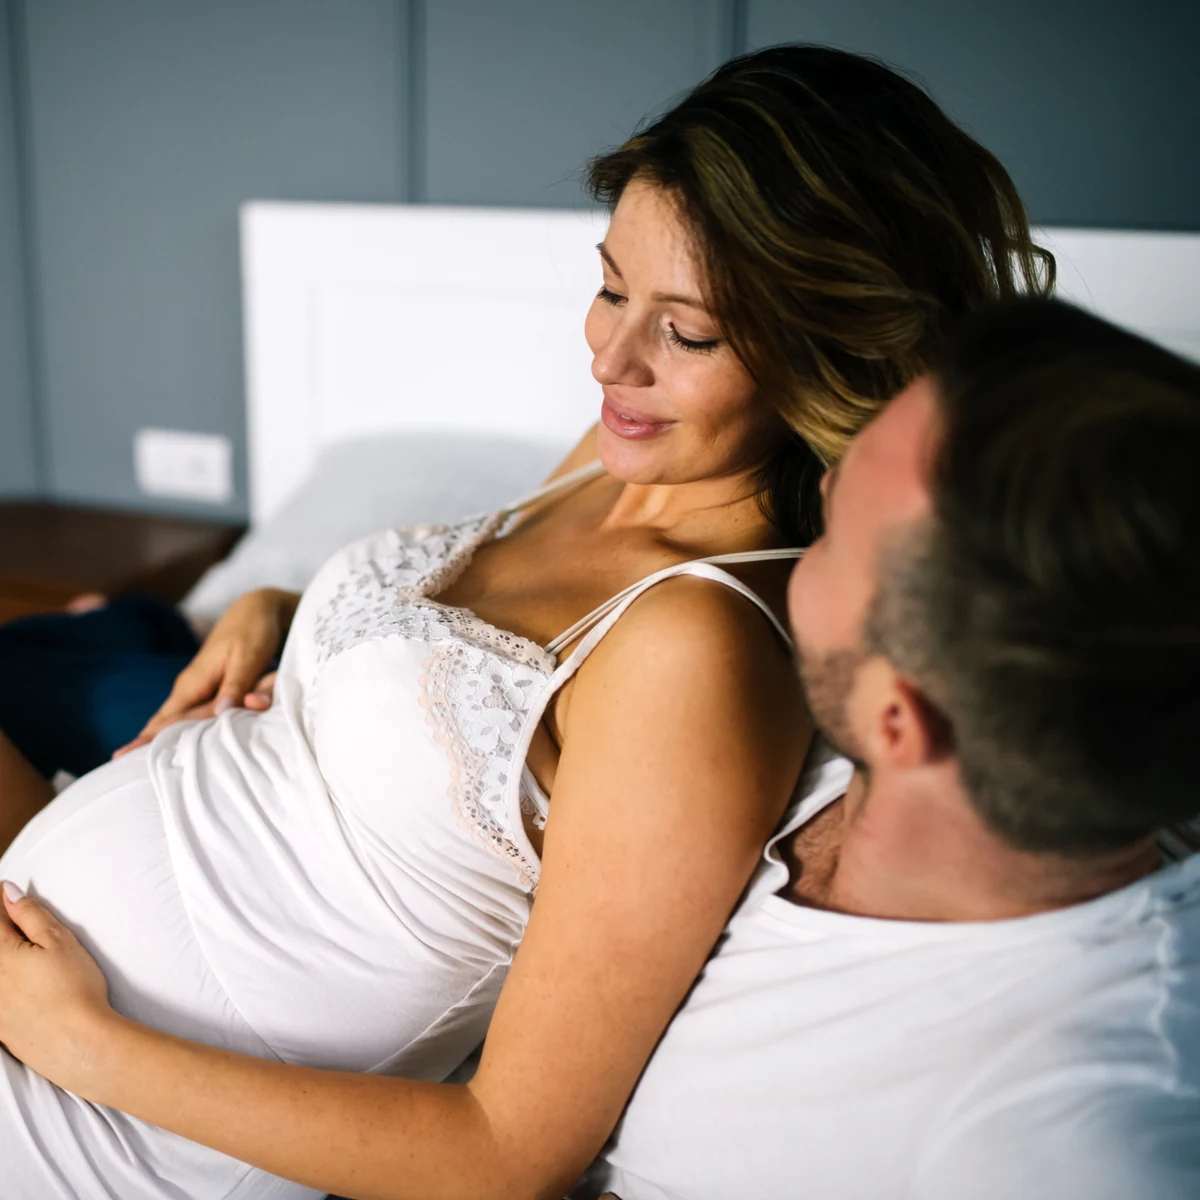 El deseo sexual aumenta en muchas mujeres durante el embarazo»